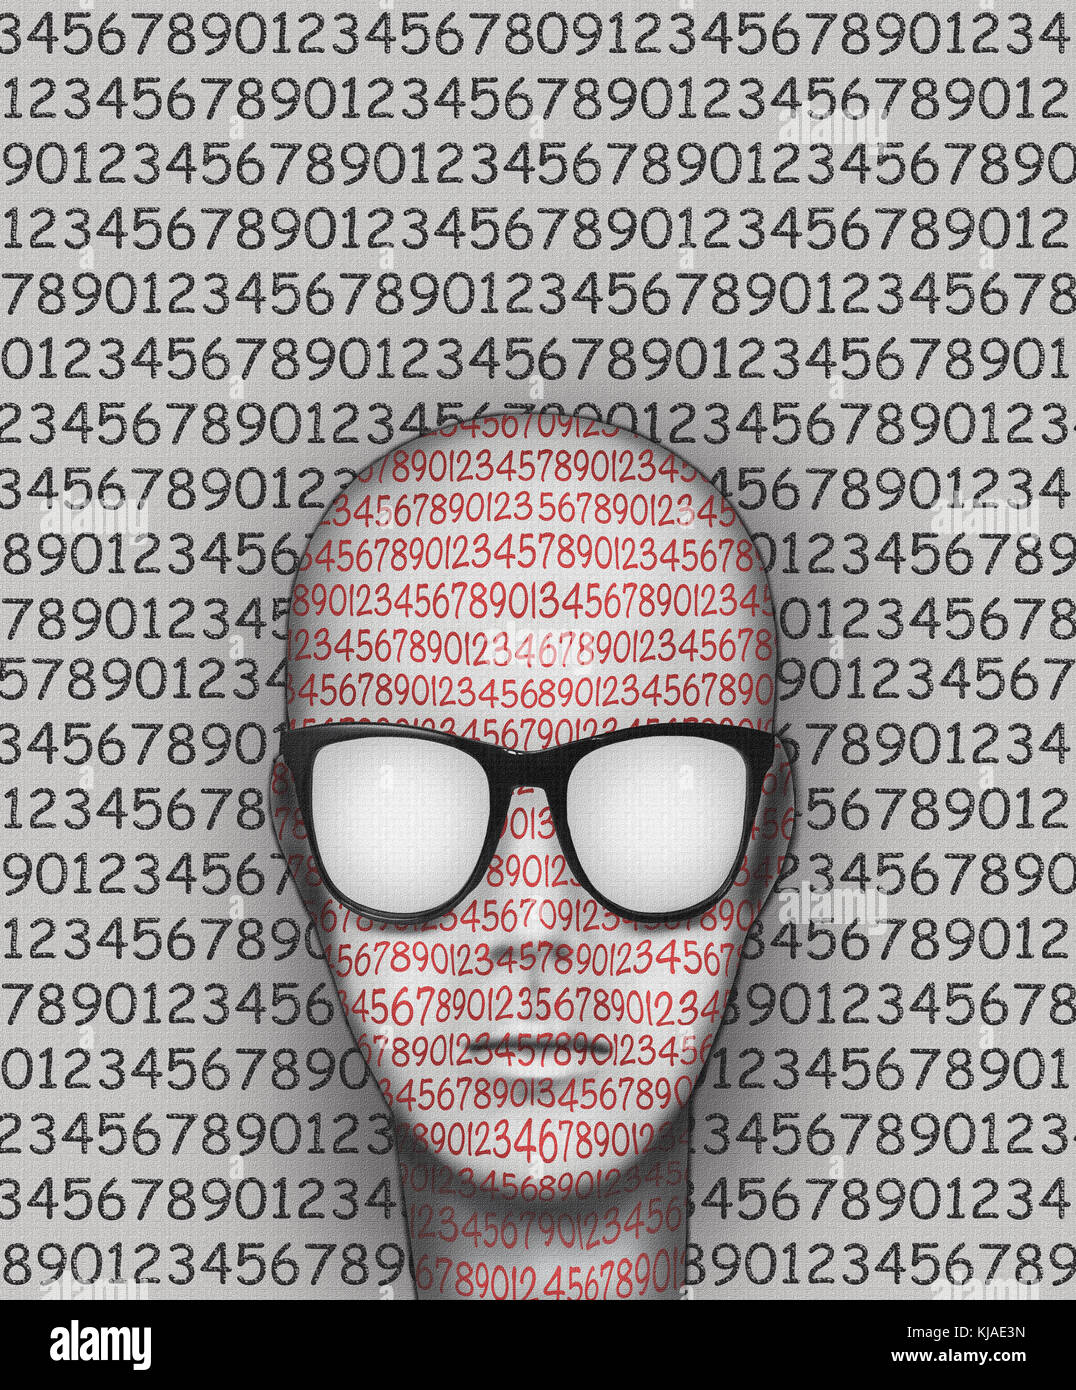 Illustrazione Grafica Che Rappresenta La Testa Di Una Persona Stilizzata Con Tutti I Numeri Sulla Faccia Gli Occhiali E Lo Sfondo Foto Stock Alamy